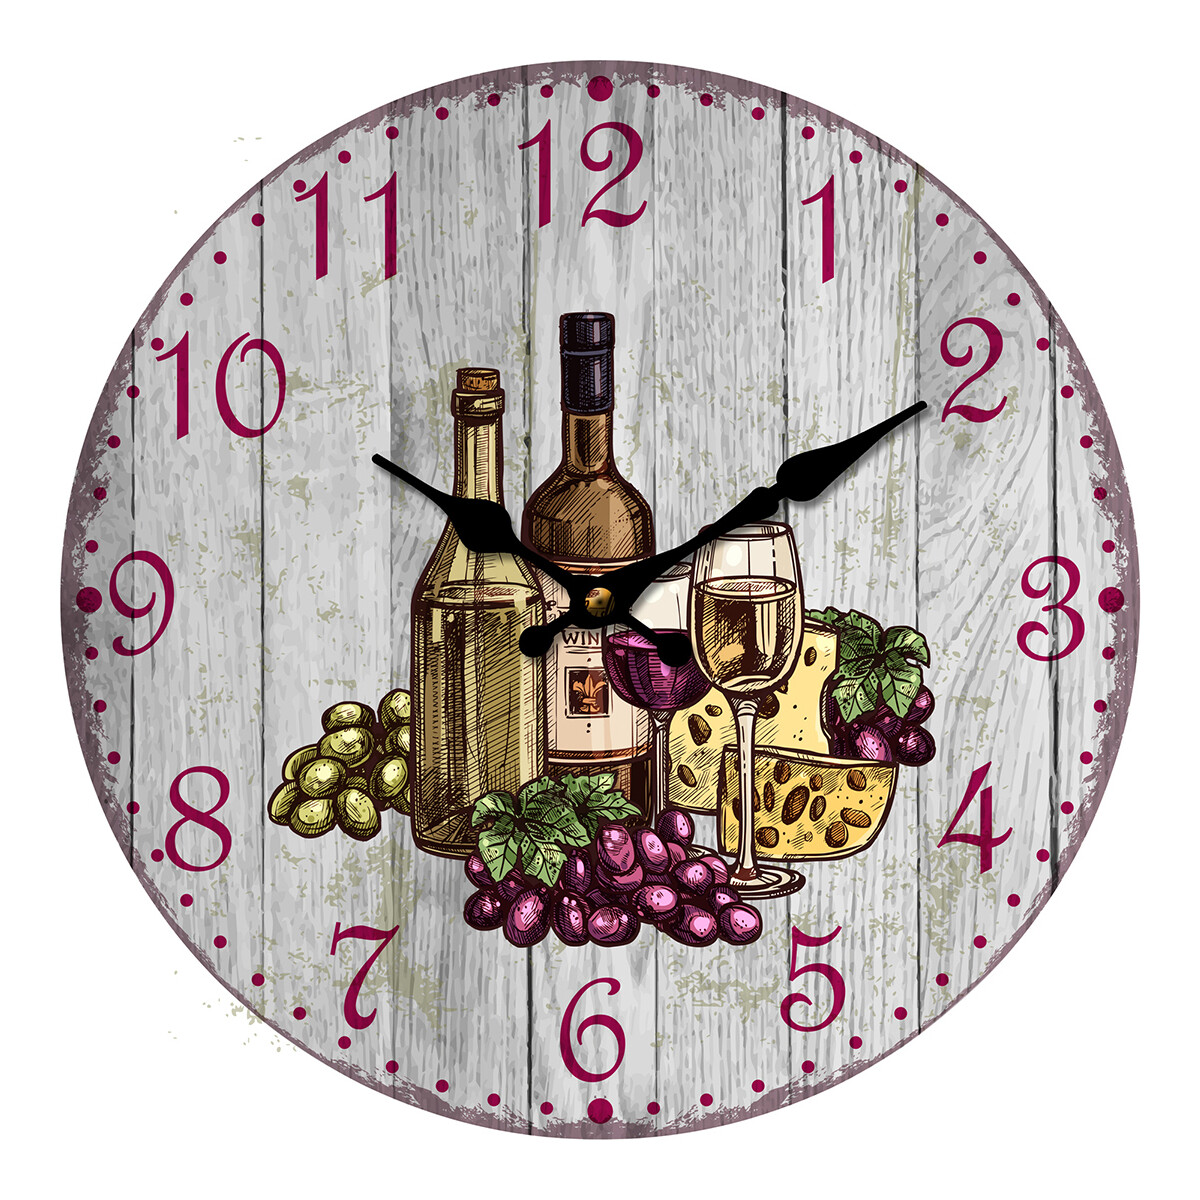 Casa Relógios Signes Grimalt Relógio De Uva E Vinho Prata